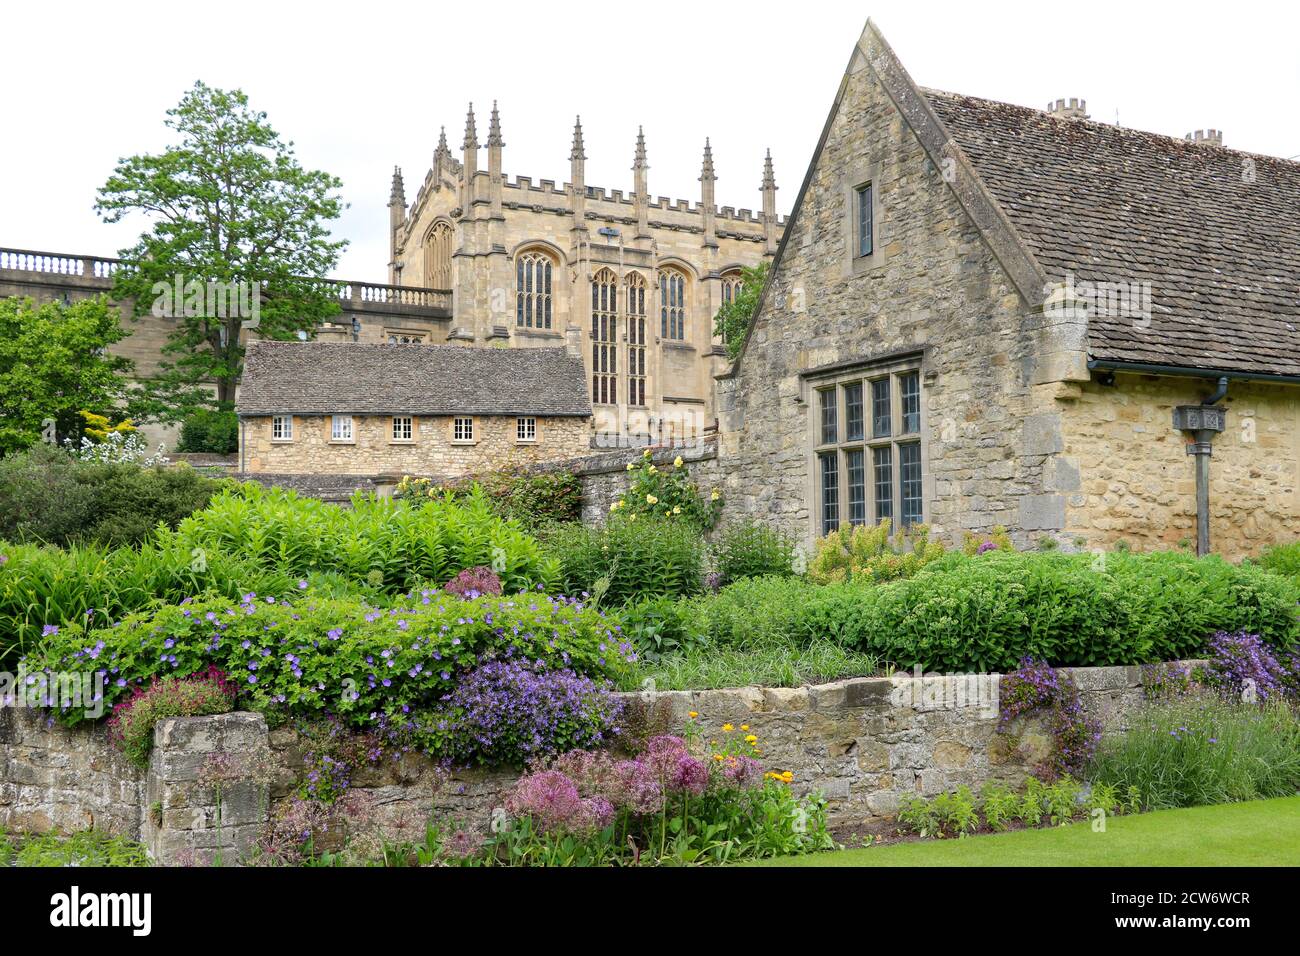 Jardin anglais et bâtiments en pierre à Oxford Angleterre Banque D'Images